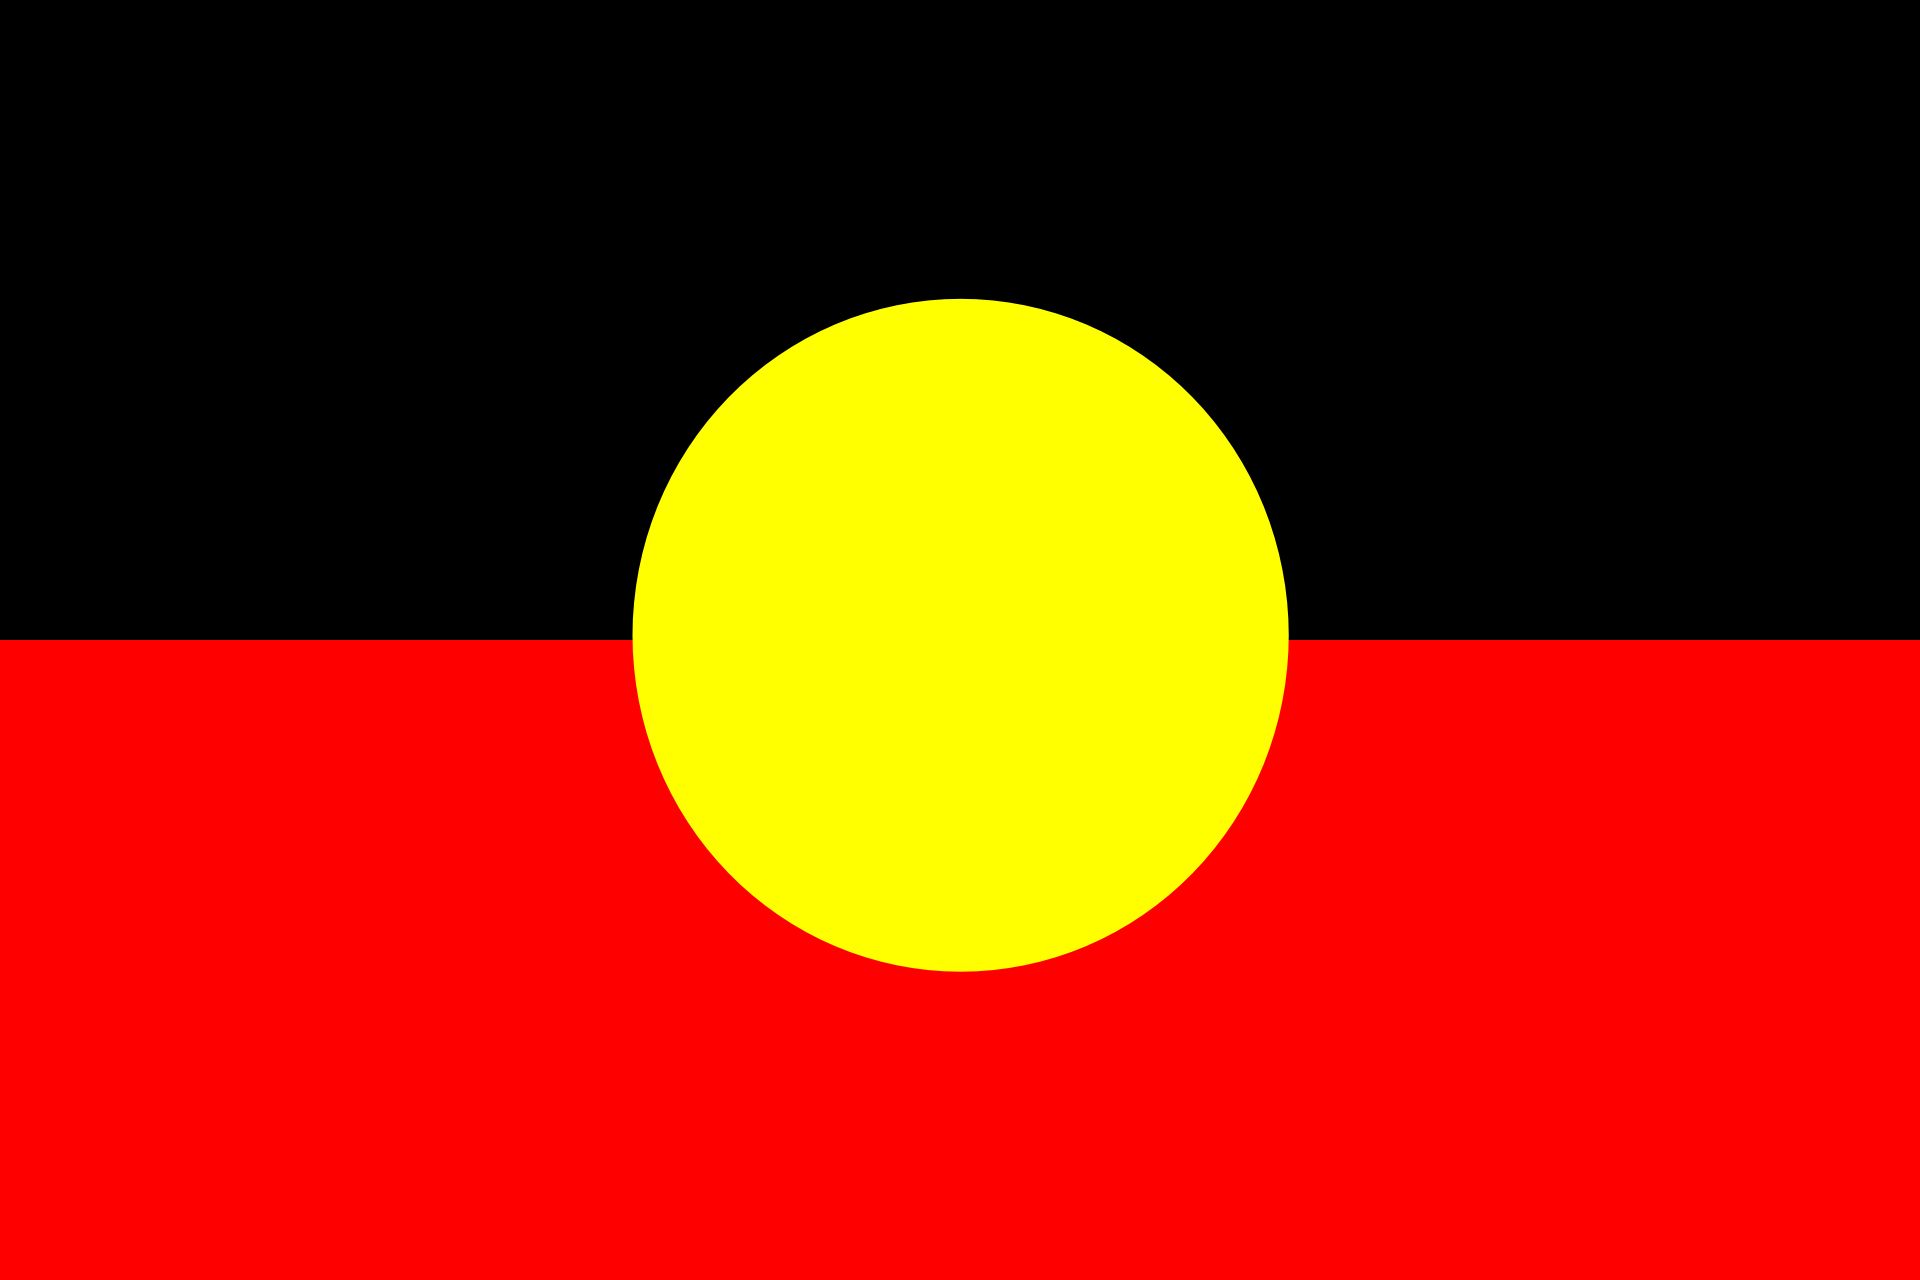 Скачать обои Флаг Австралийских Аборигенов на телефон бесплатно